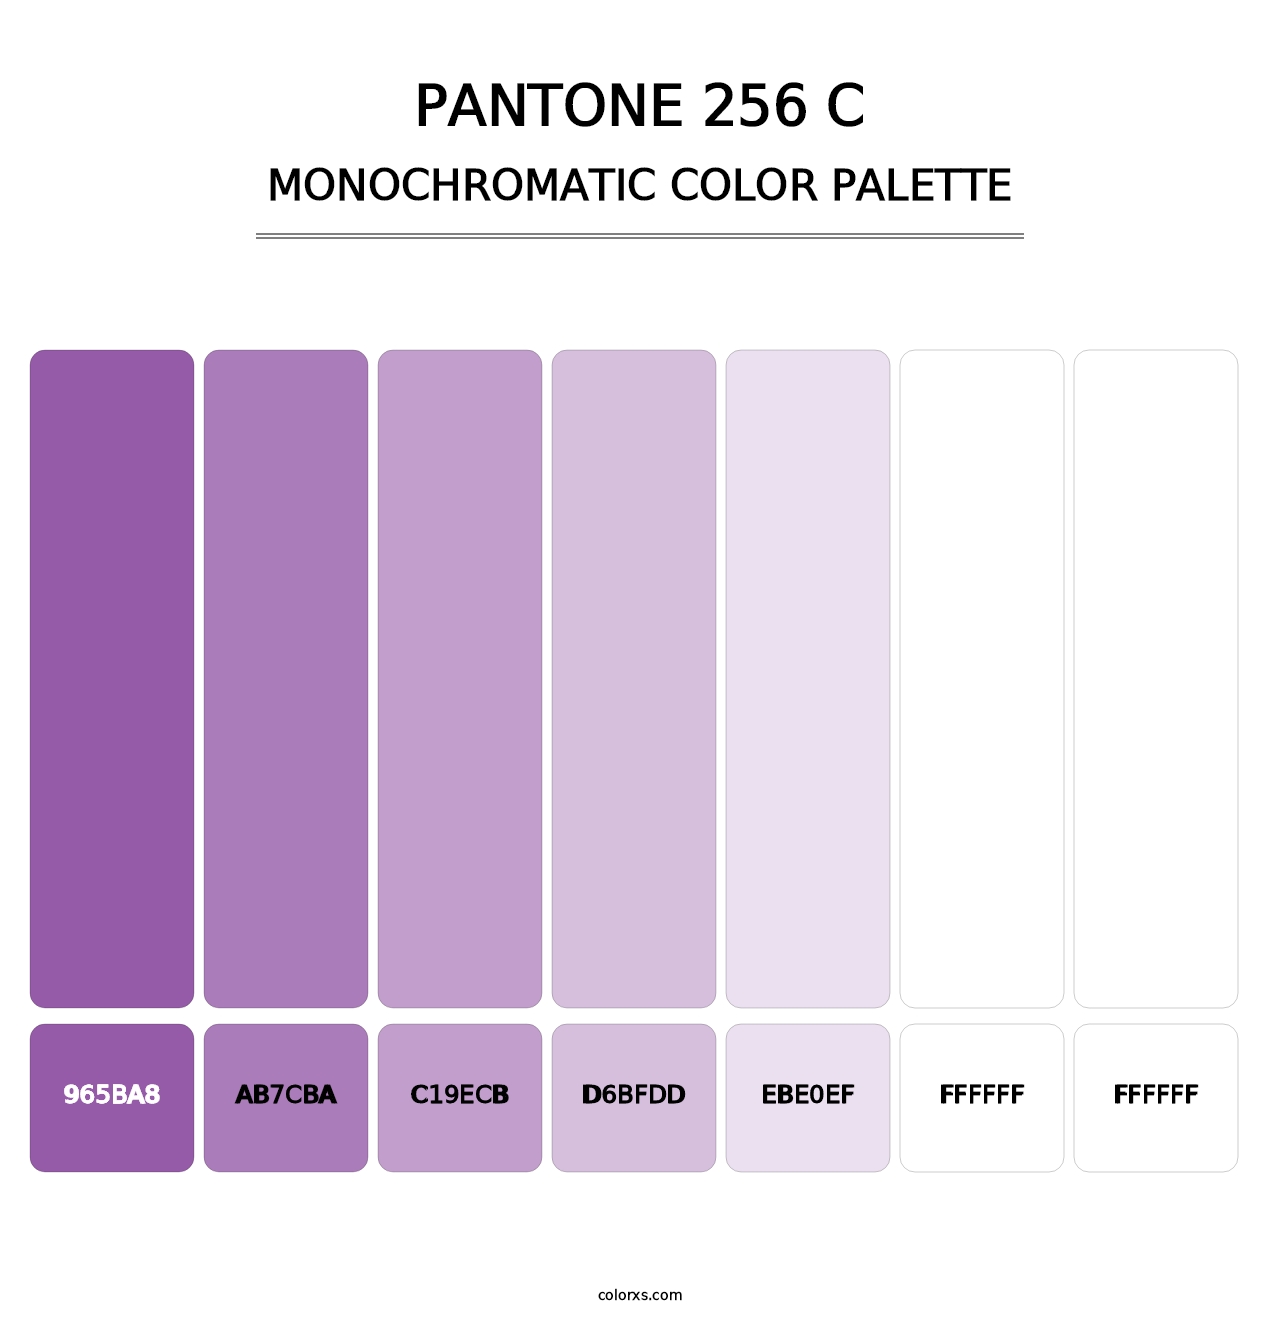 PANTONE 256 C - Monochromatic Color Palette